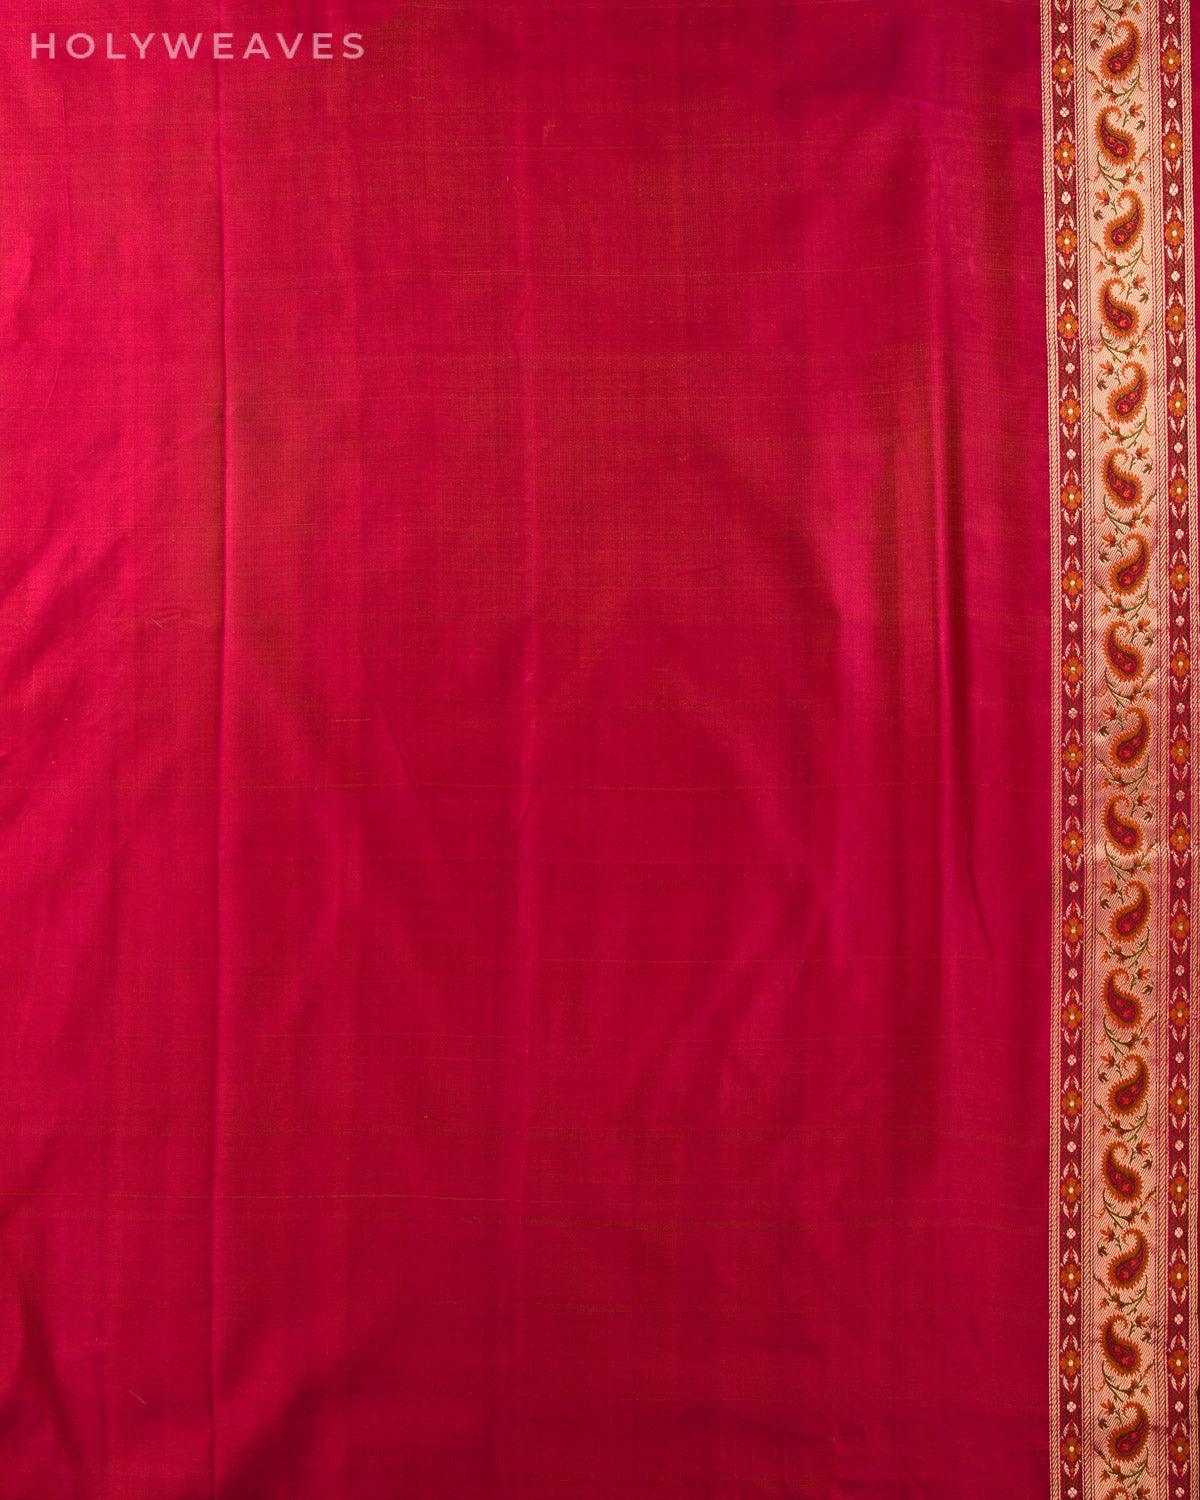 Magenta Banarasi Tehri Gharchola Jamawar Brocade Handwoven Katan Silk Saree - By HolyWeaves, Benares